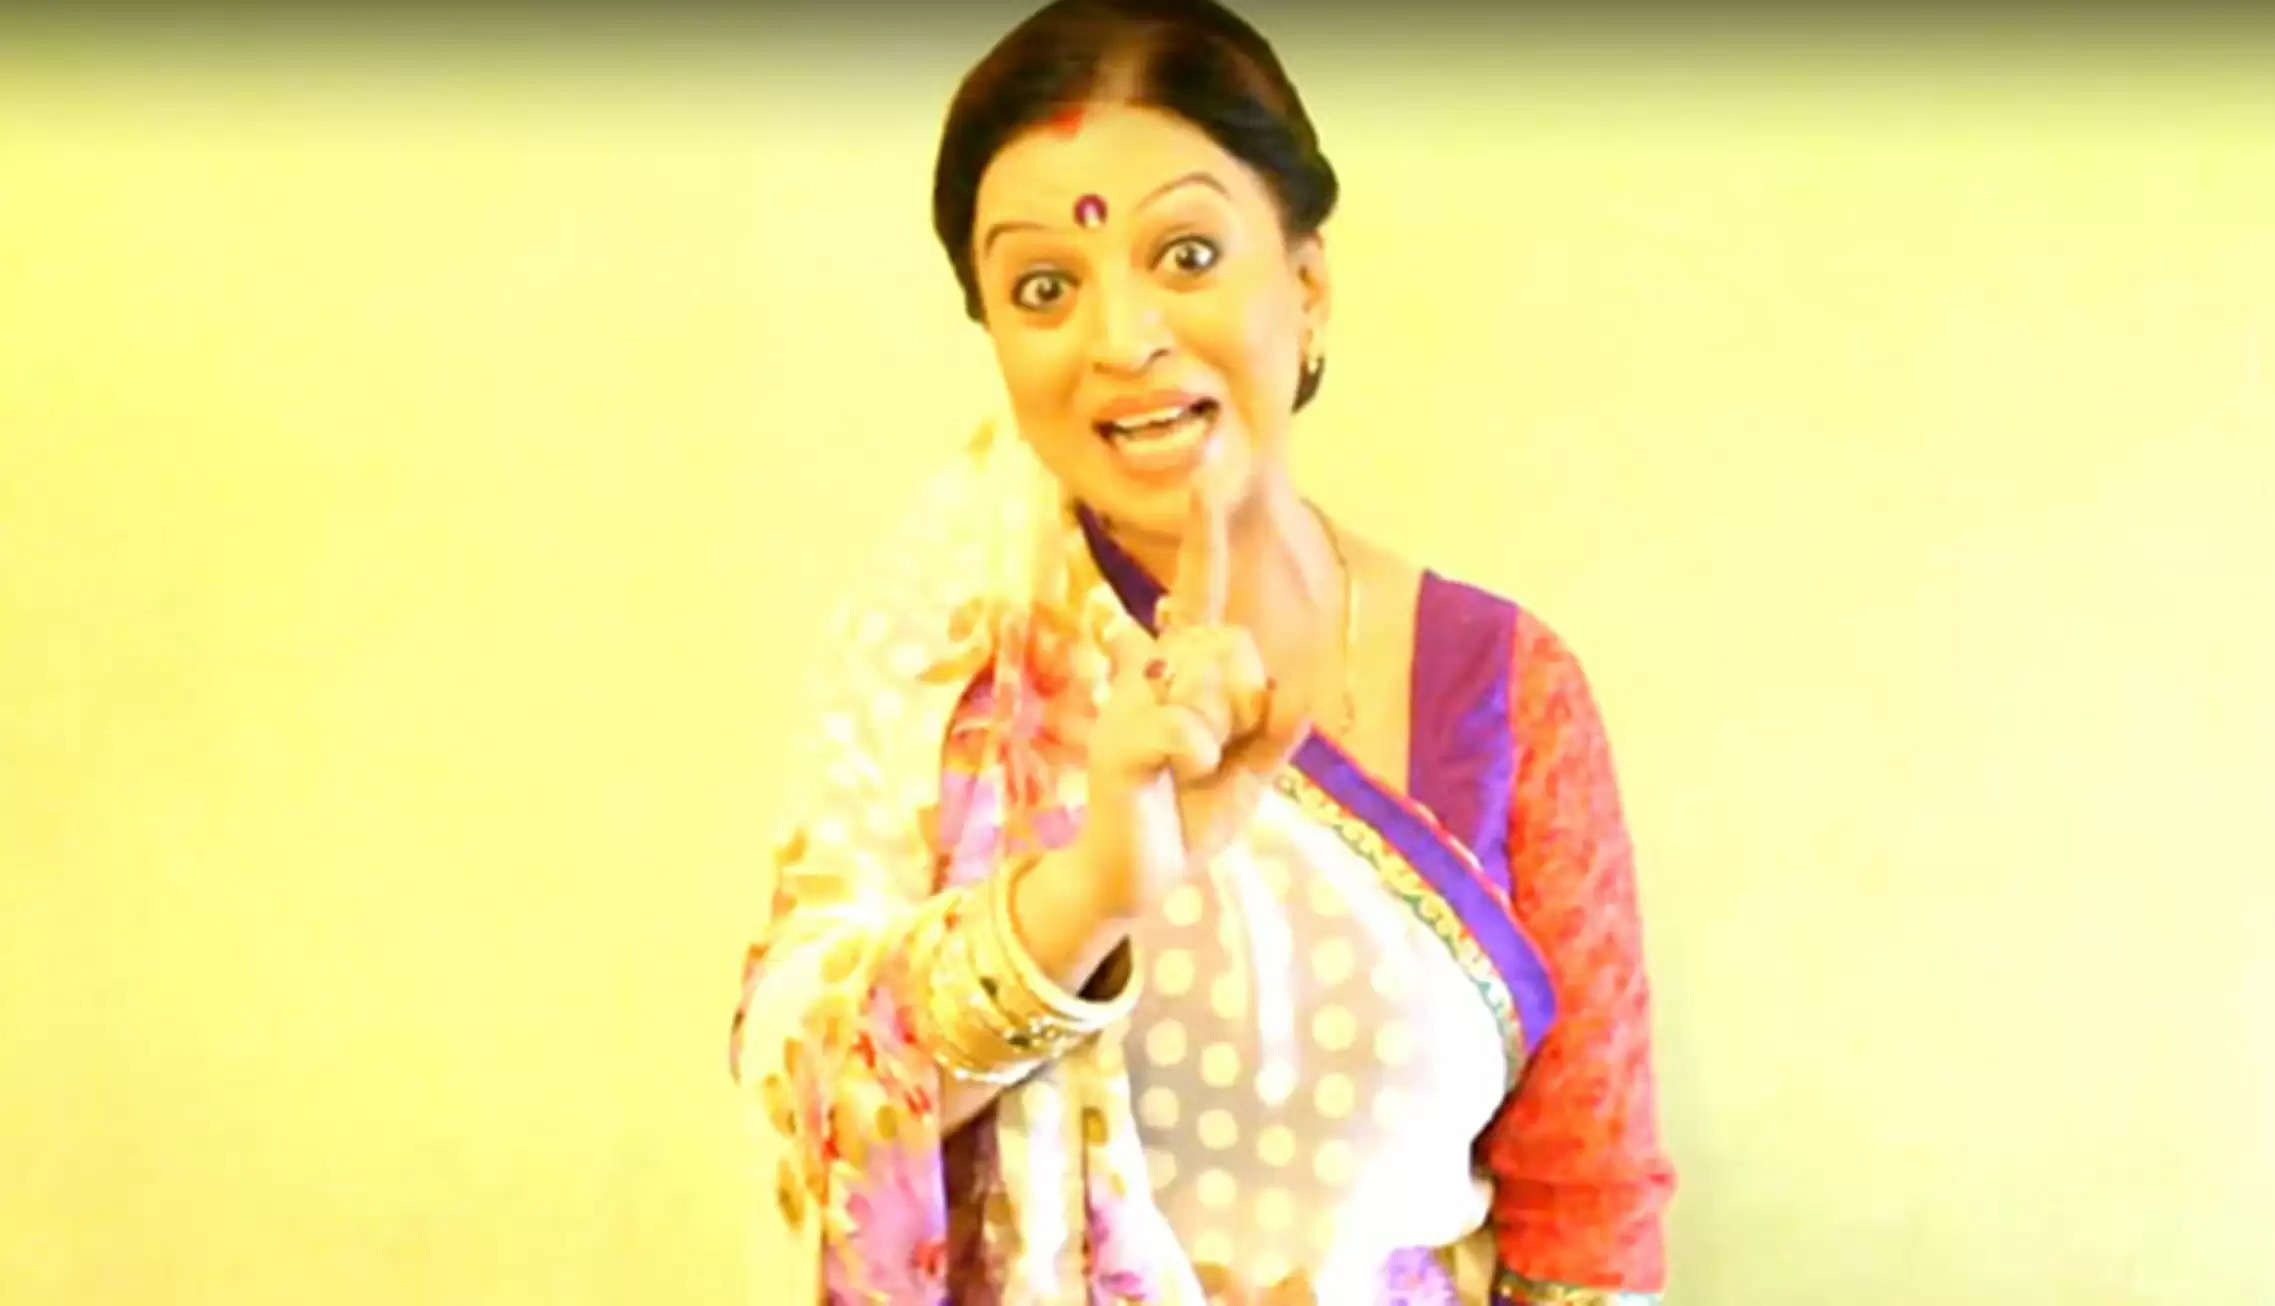 ‘निमकी मुखिया’ में अनारो देवी की भूमिका में दिखेंगी भोजपुरी अभिनेत्री नीलिमा सिंह